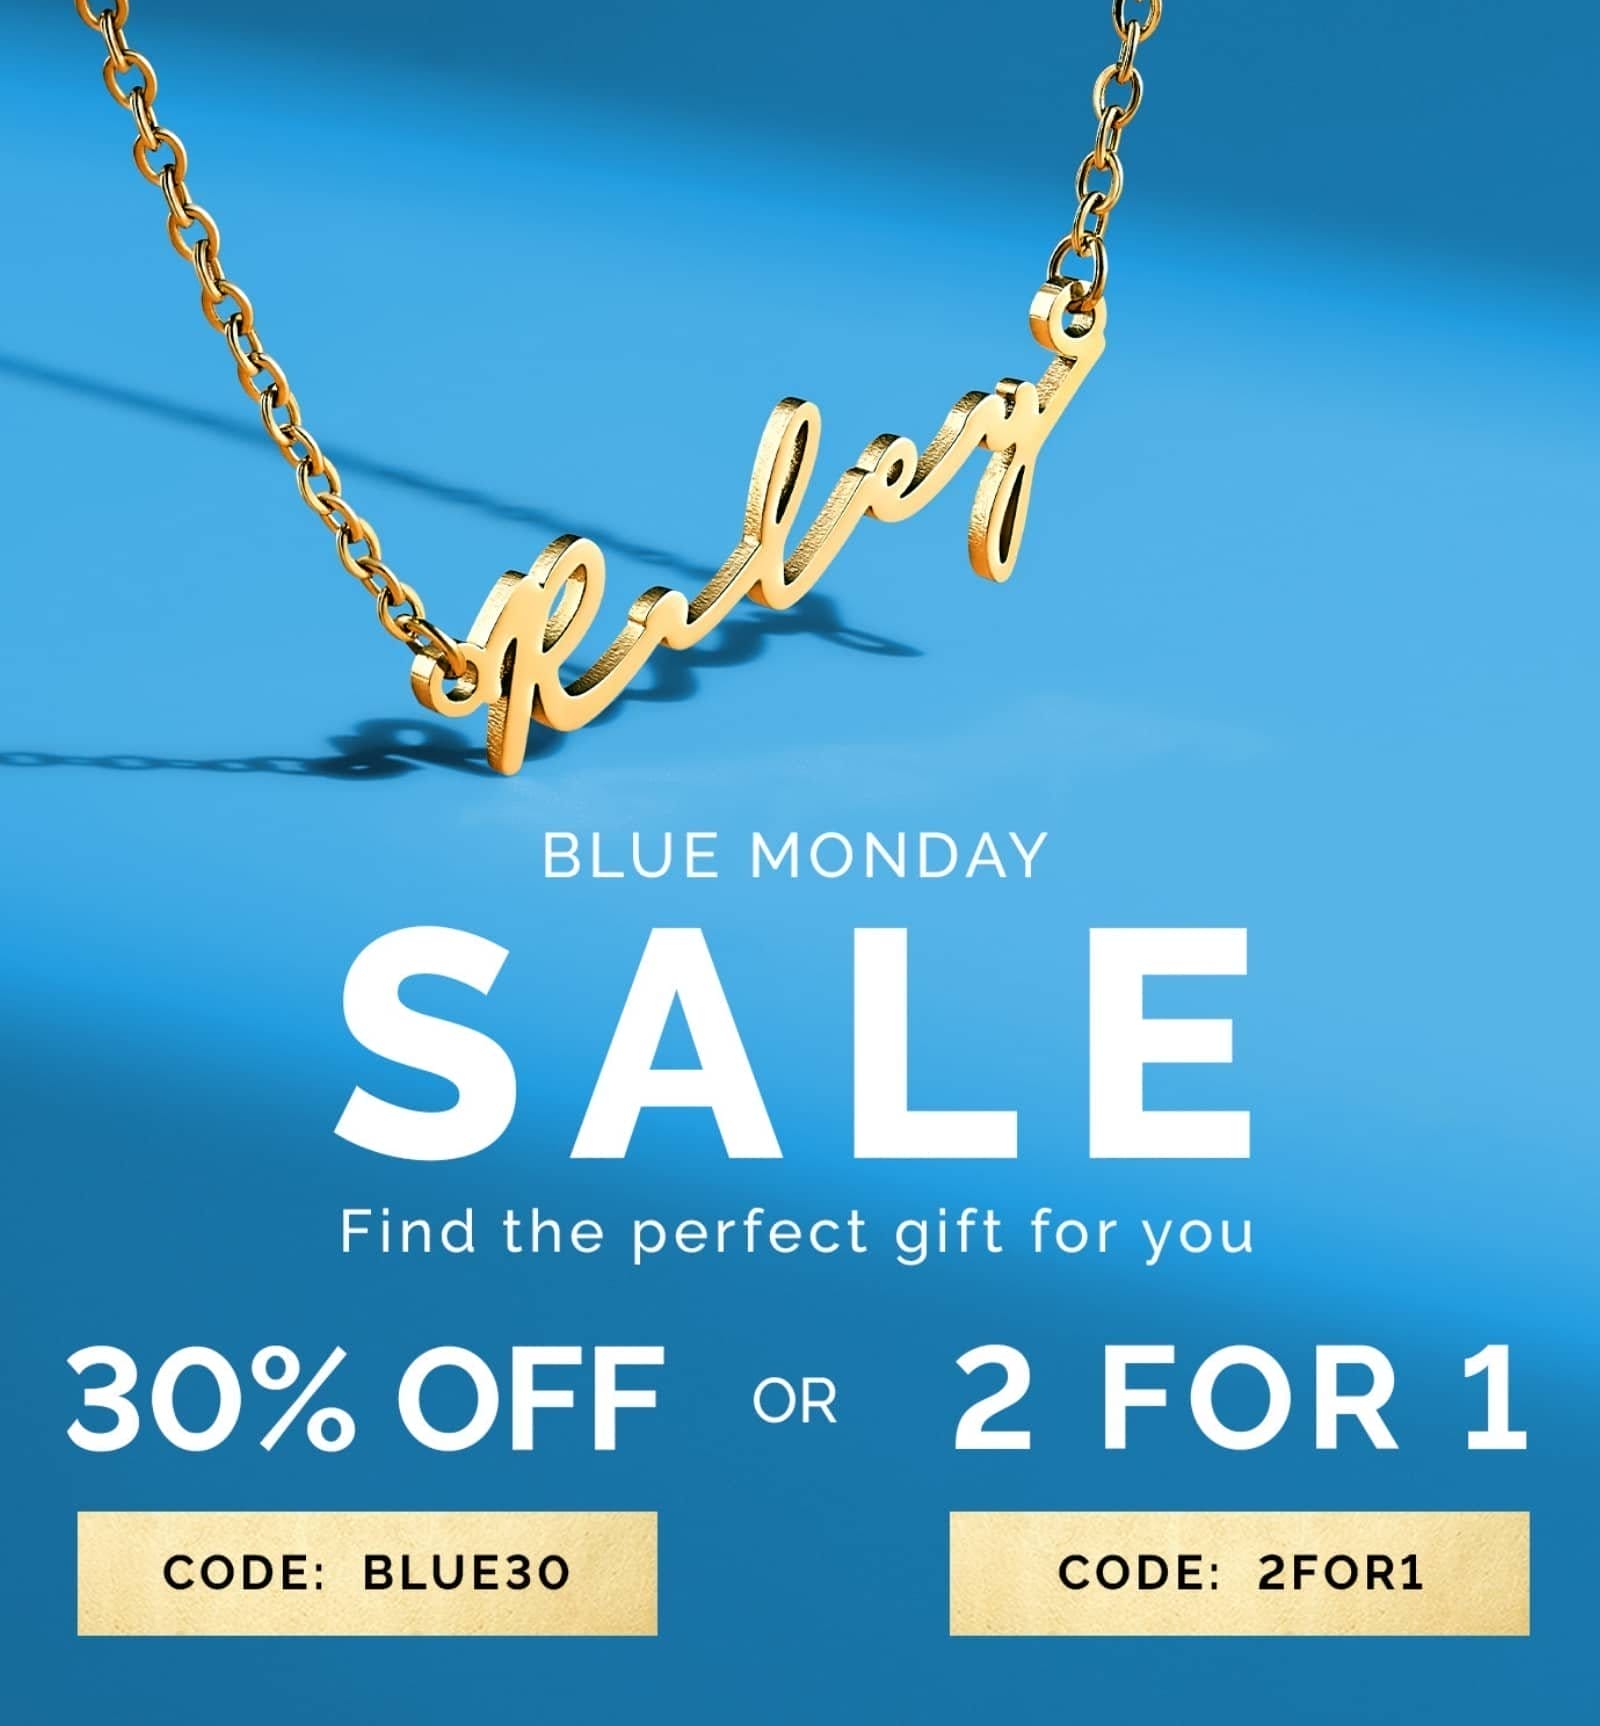 Blue Monday sale